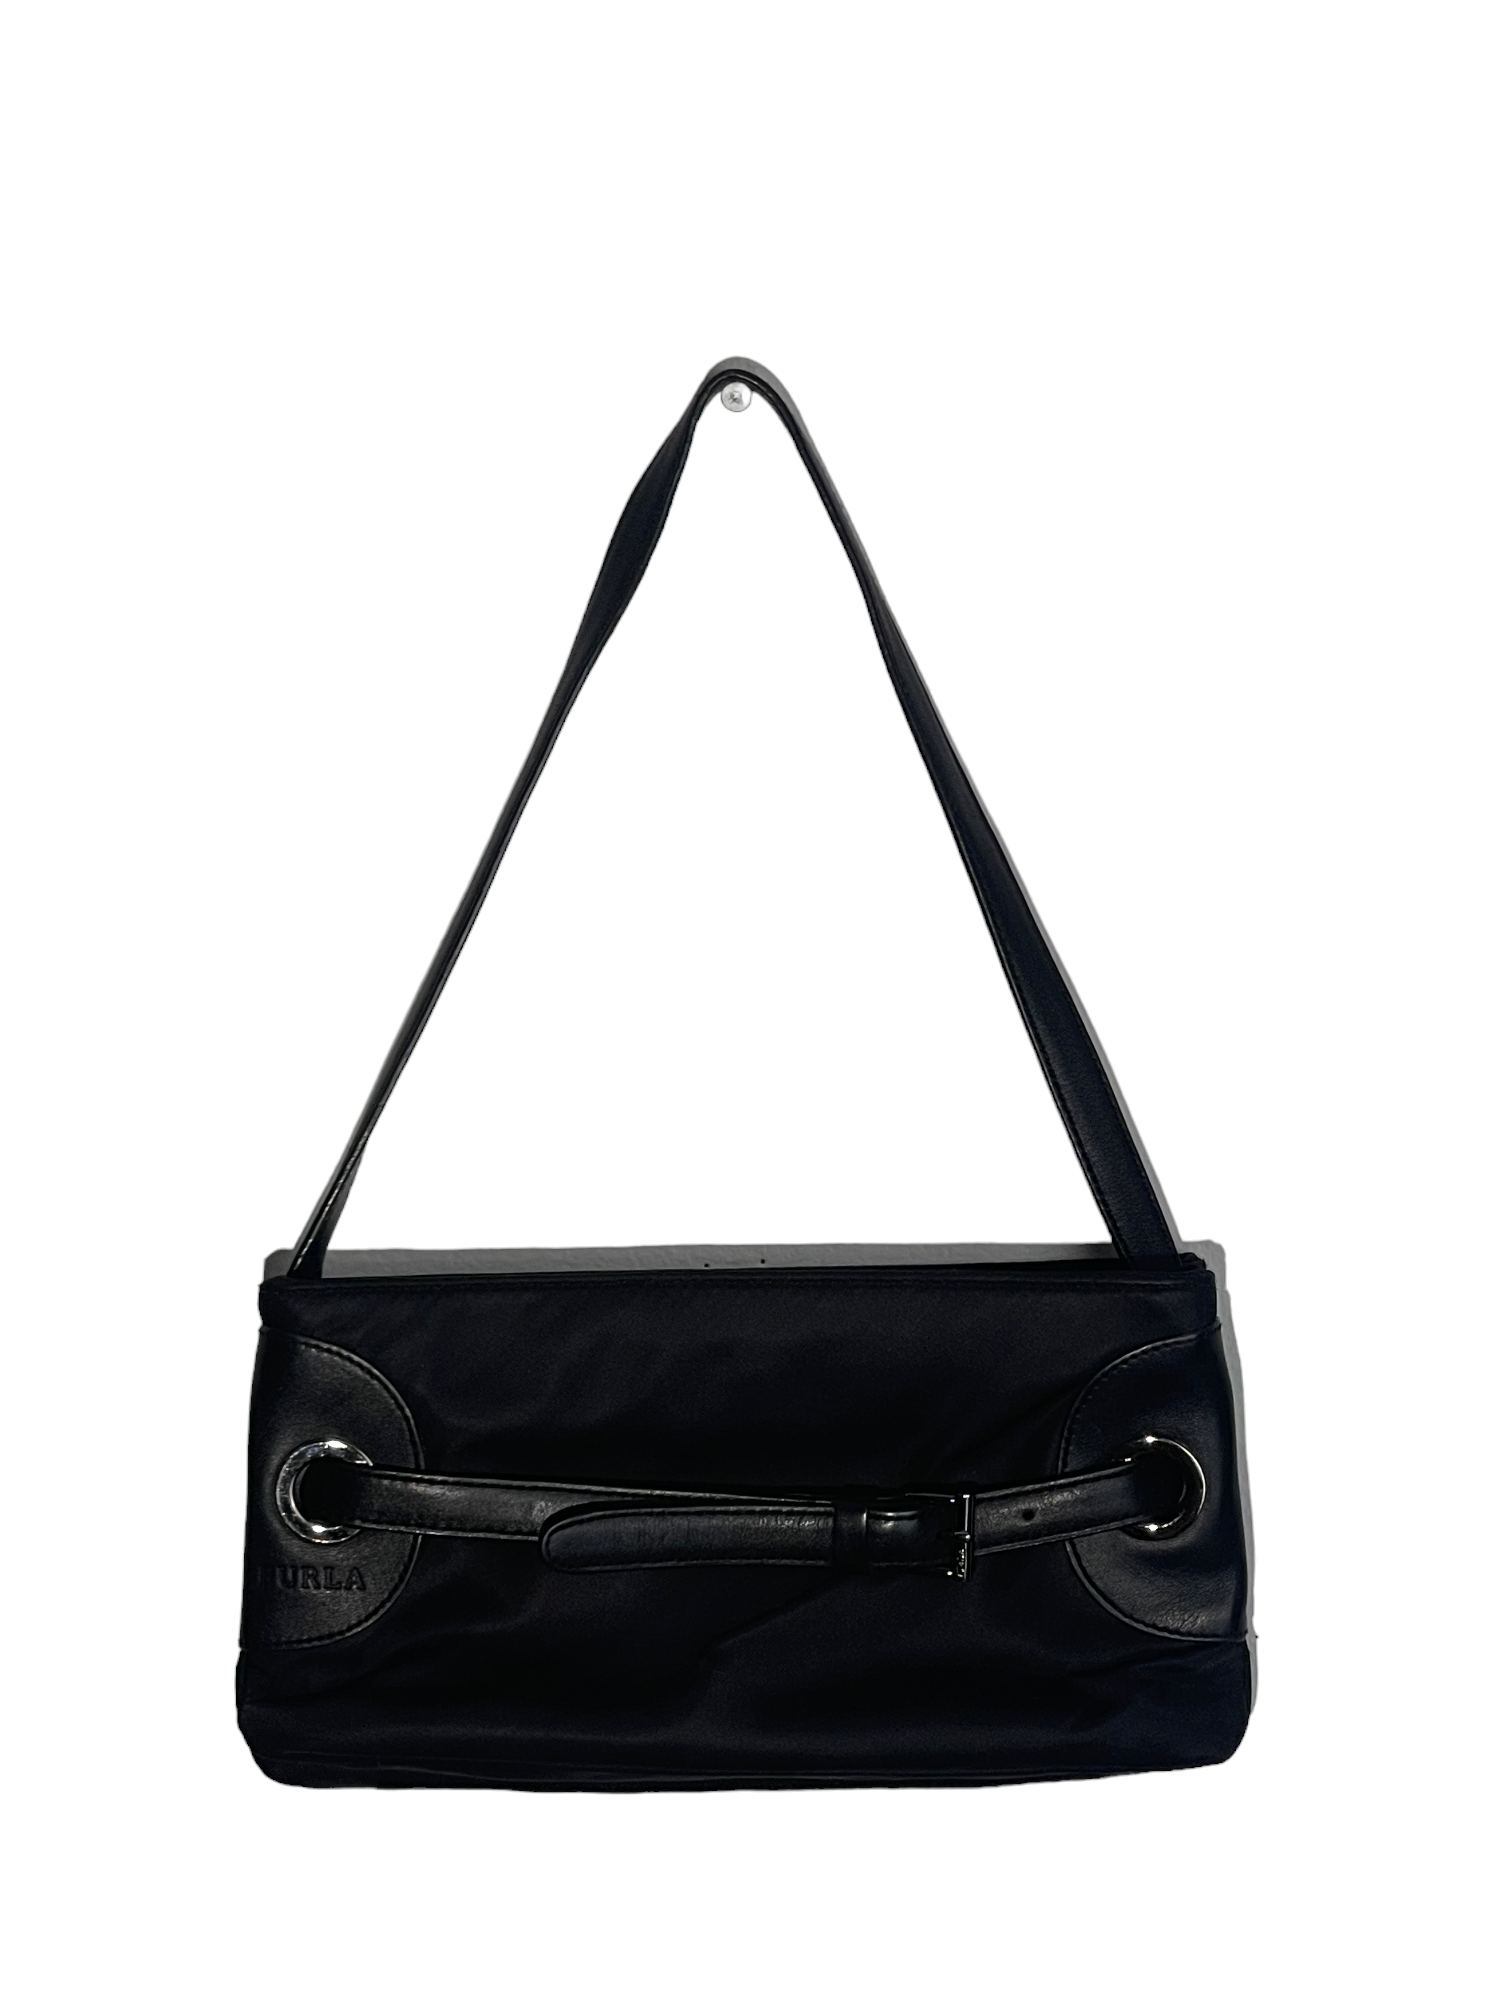 Black Furla Shoulder Bag.